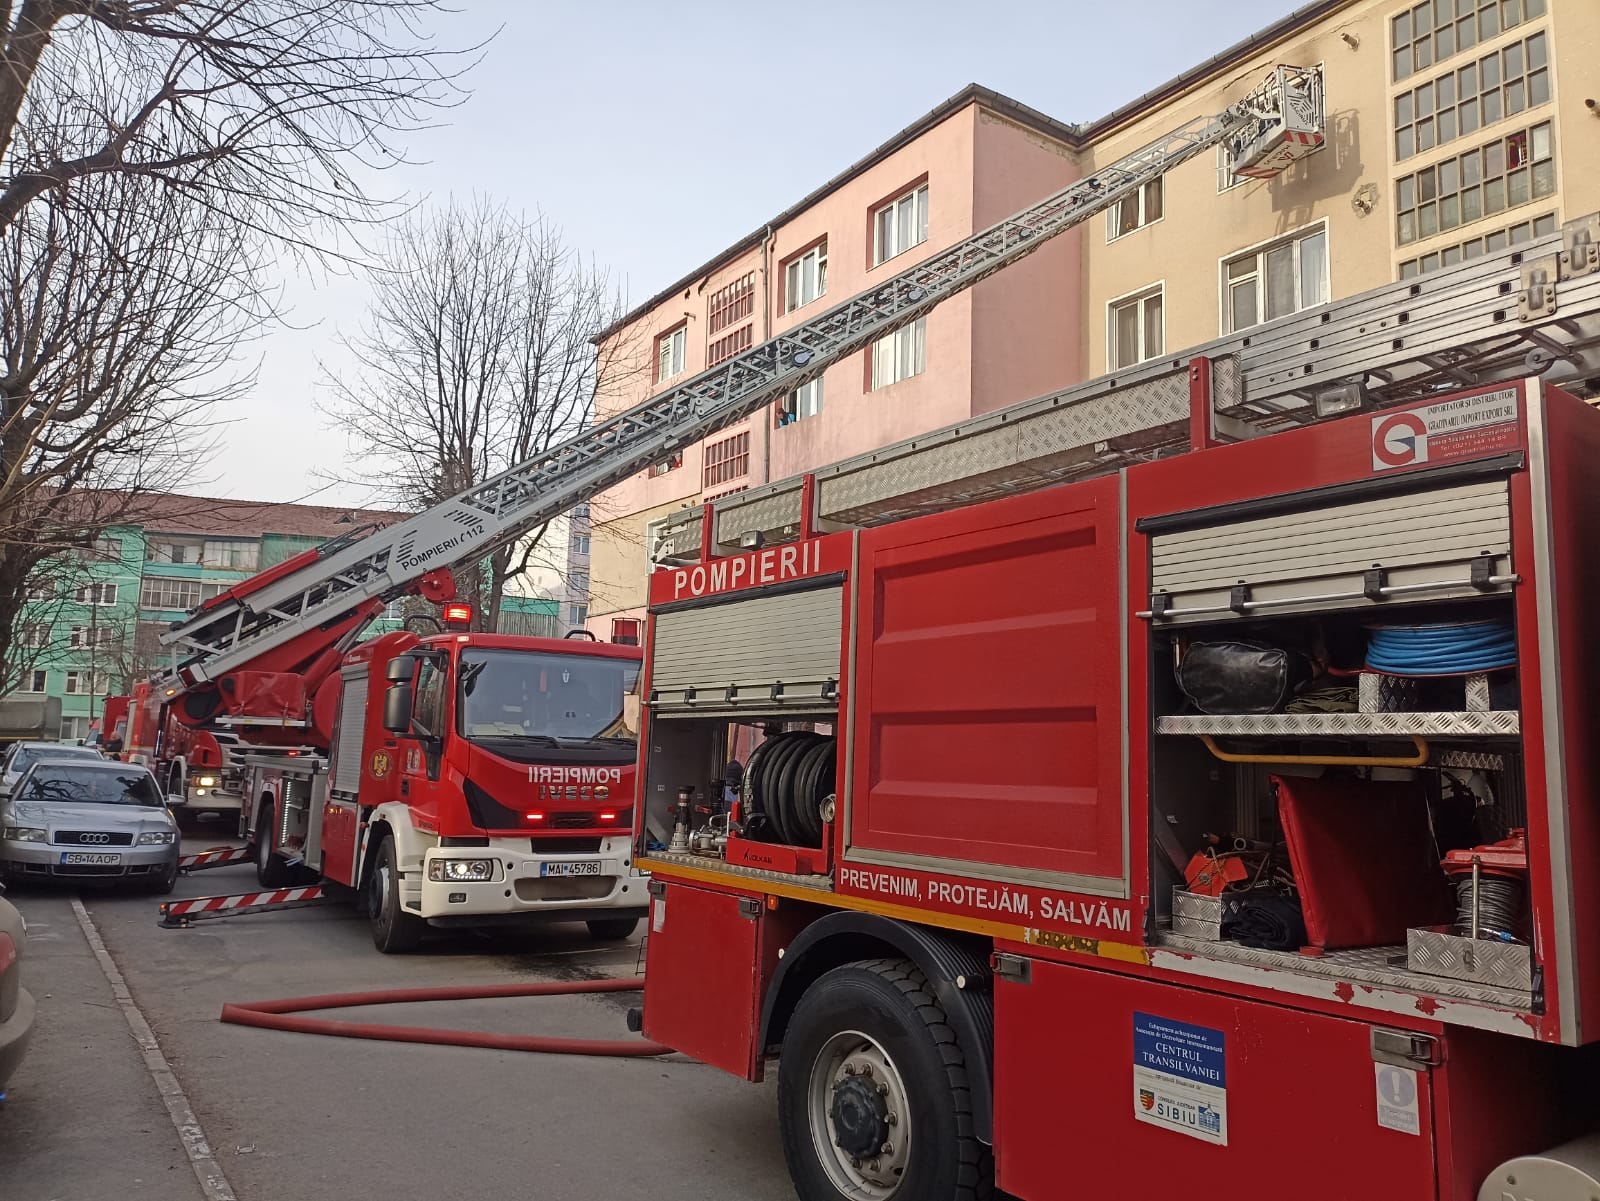 ACTUALIZARE - Incendiu la un bloc în Terezian. Focul a pornit de la o candelă lăsată în apartament